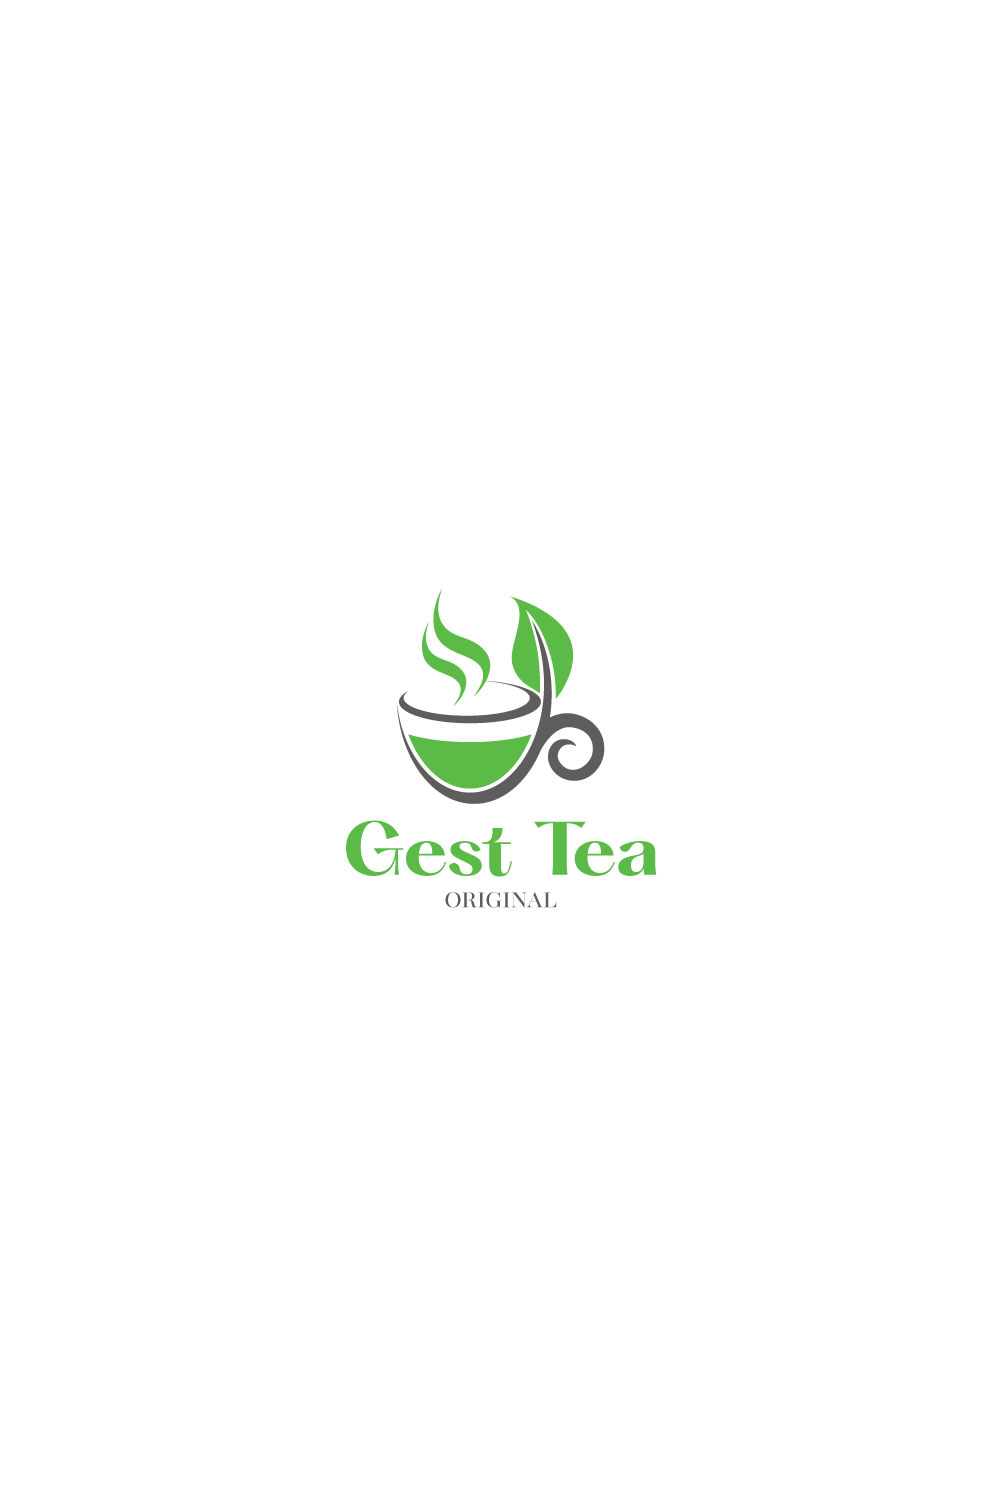 Gest Tea Logo Design pinterest preview image.